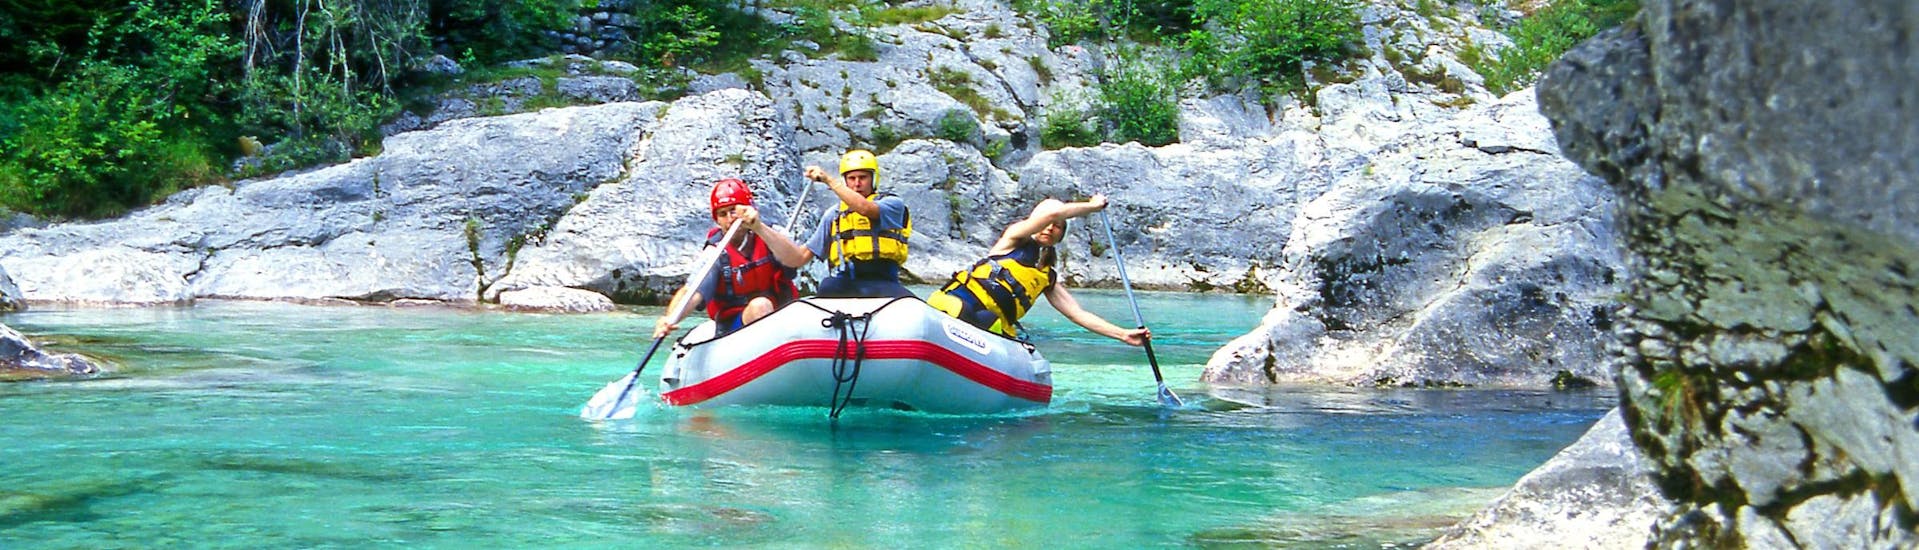 Učja-vallei: Een groep jongeren geniet van een wildwateravontuur in een van de hotspots voor rafting en canyoning.